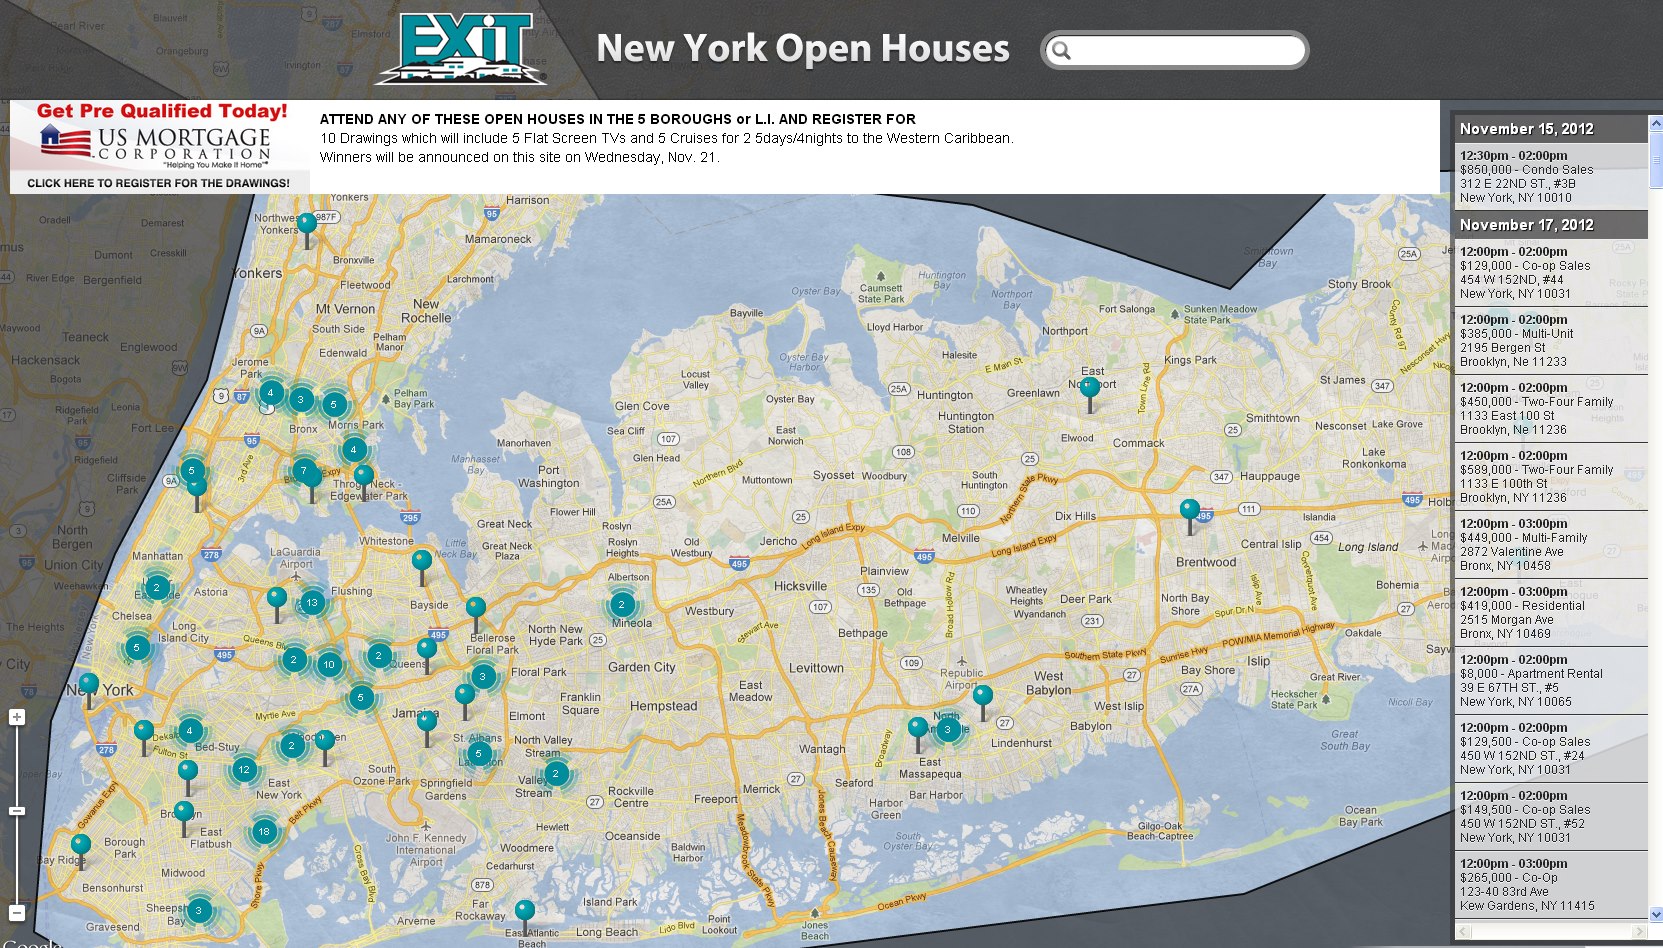 New York Open House Extravaganza Nov 17 18